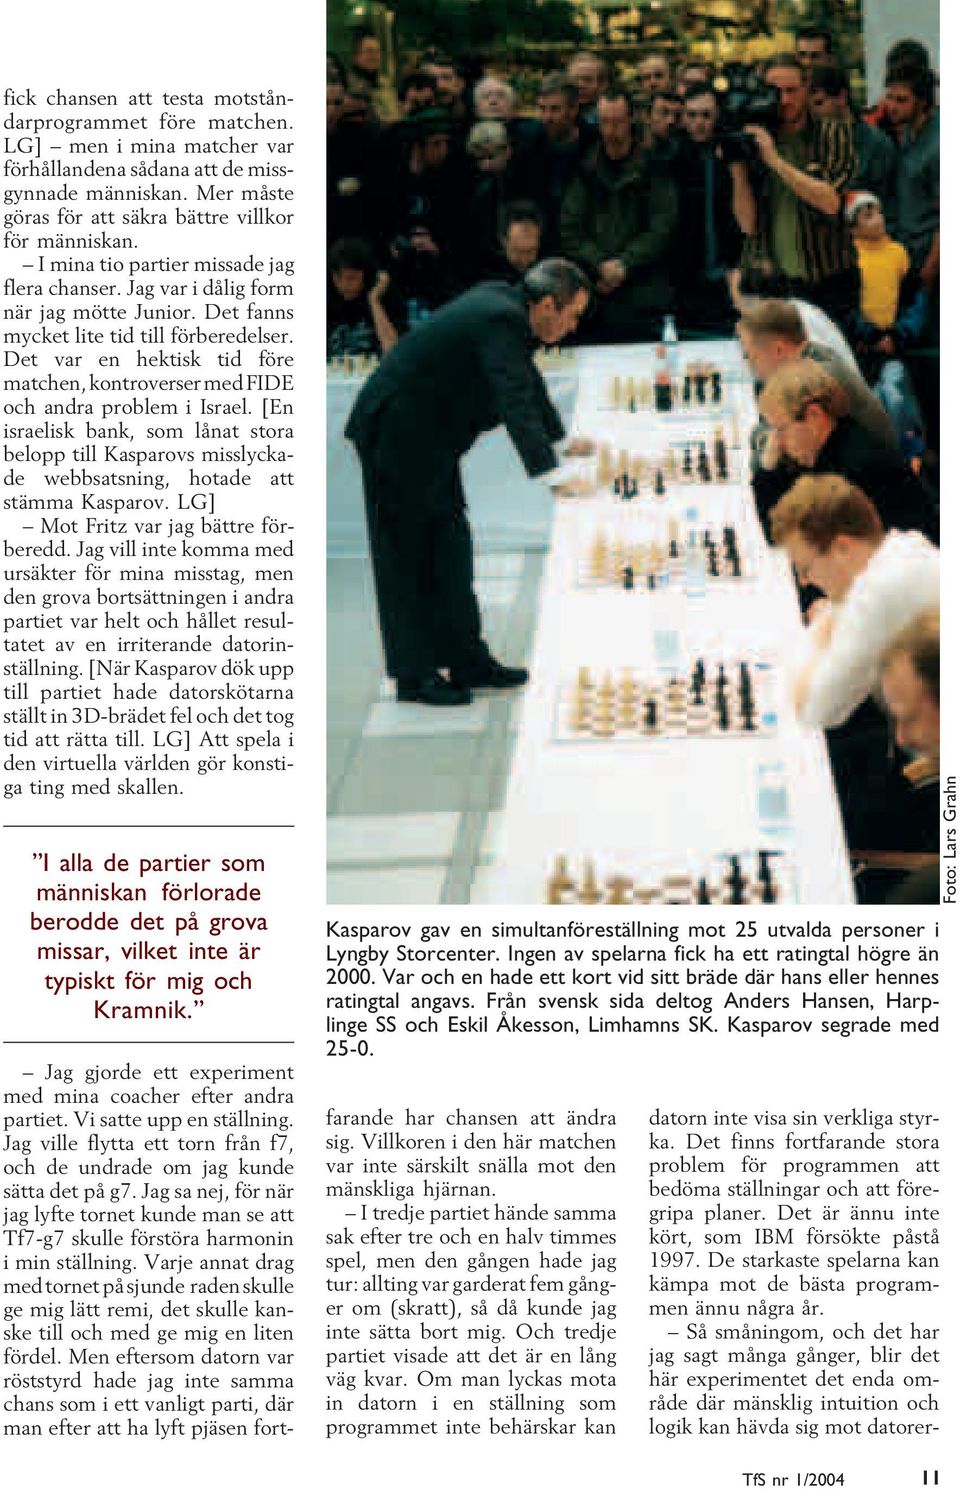 Det var en hektisk tid före matchen, kontroverser med FIDE och andra problem i Israel. [En israelisk bank, som lånat stora belopp till Kasparovs misslyckade webbsatsning, hotade att stämma Kasparov.